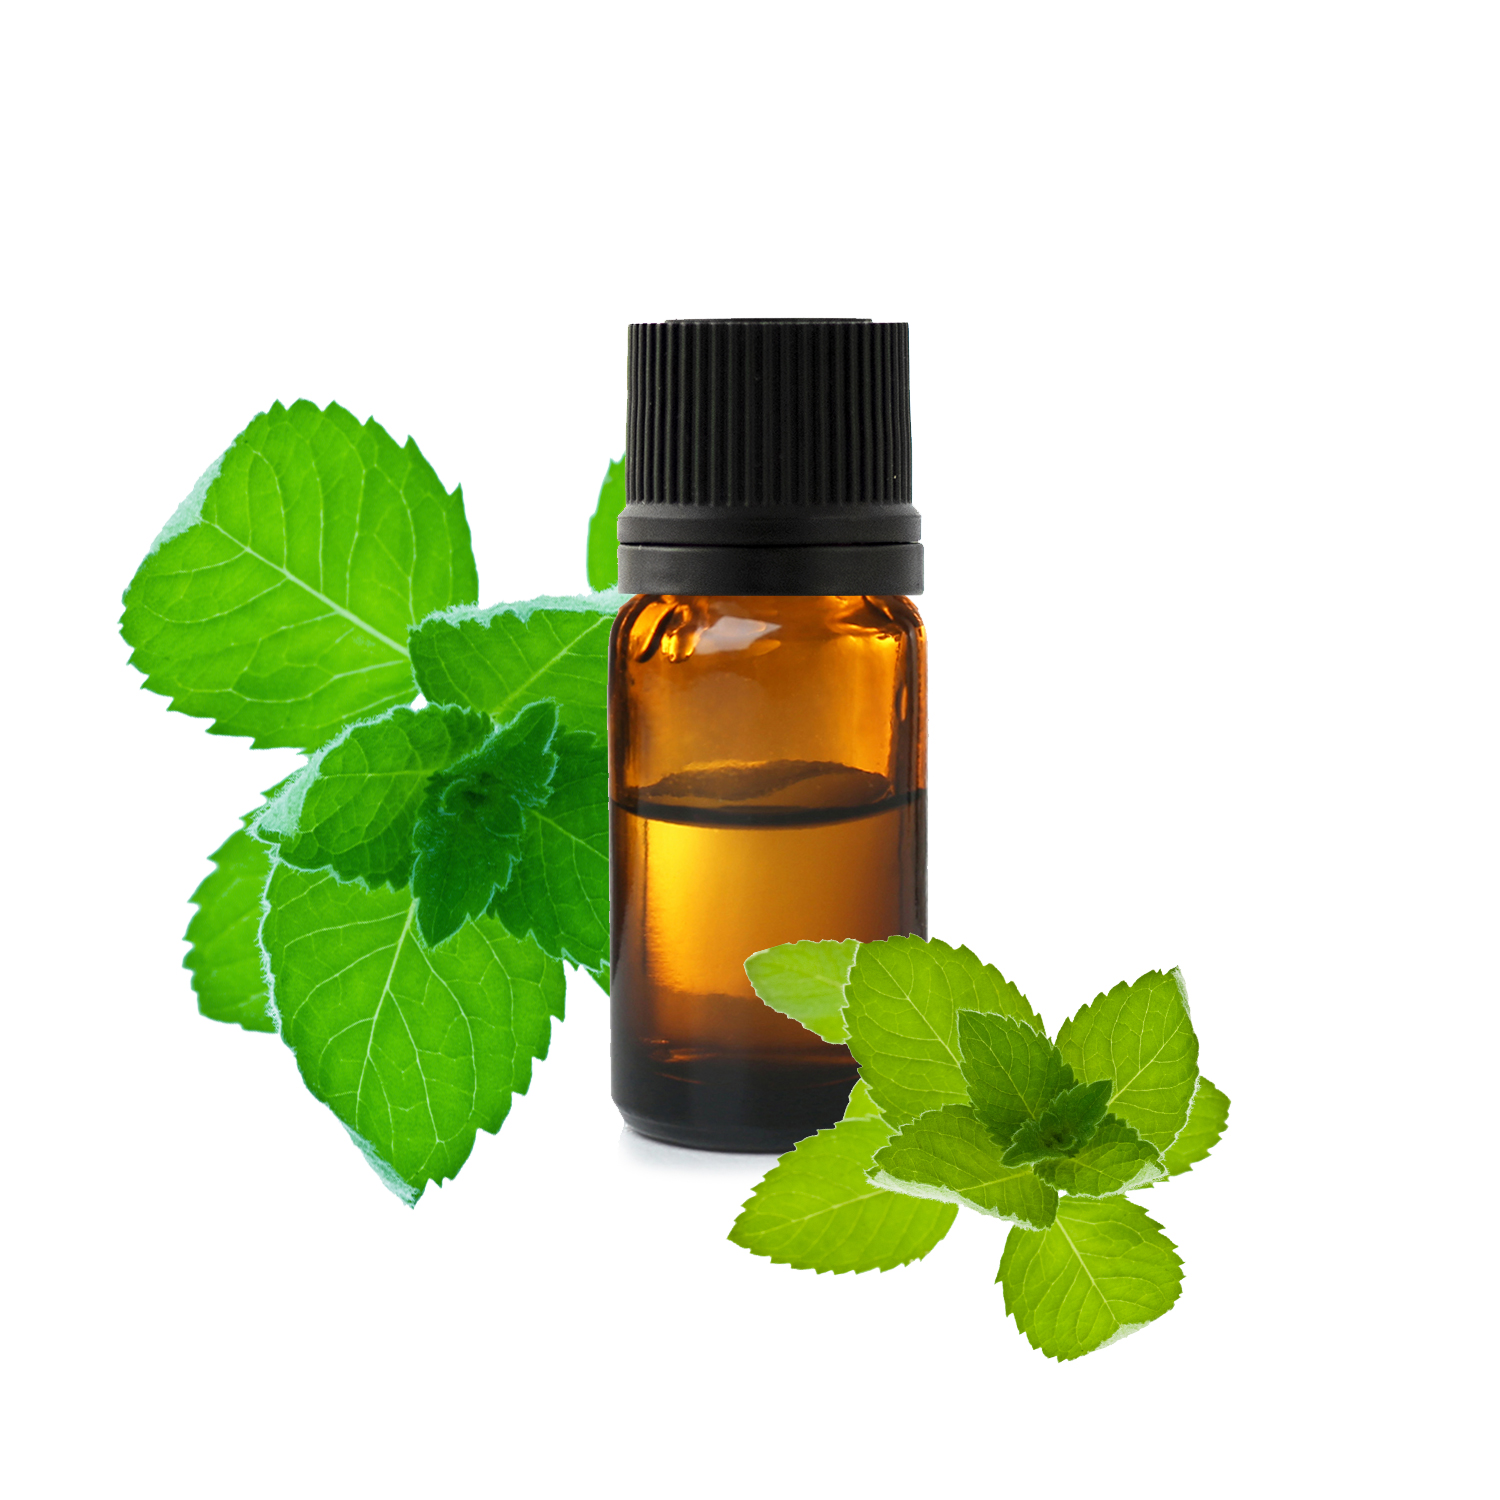 Huile essentielle de menthe verte - Vente aromathérapie de qualité